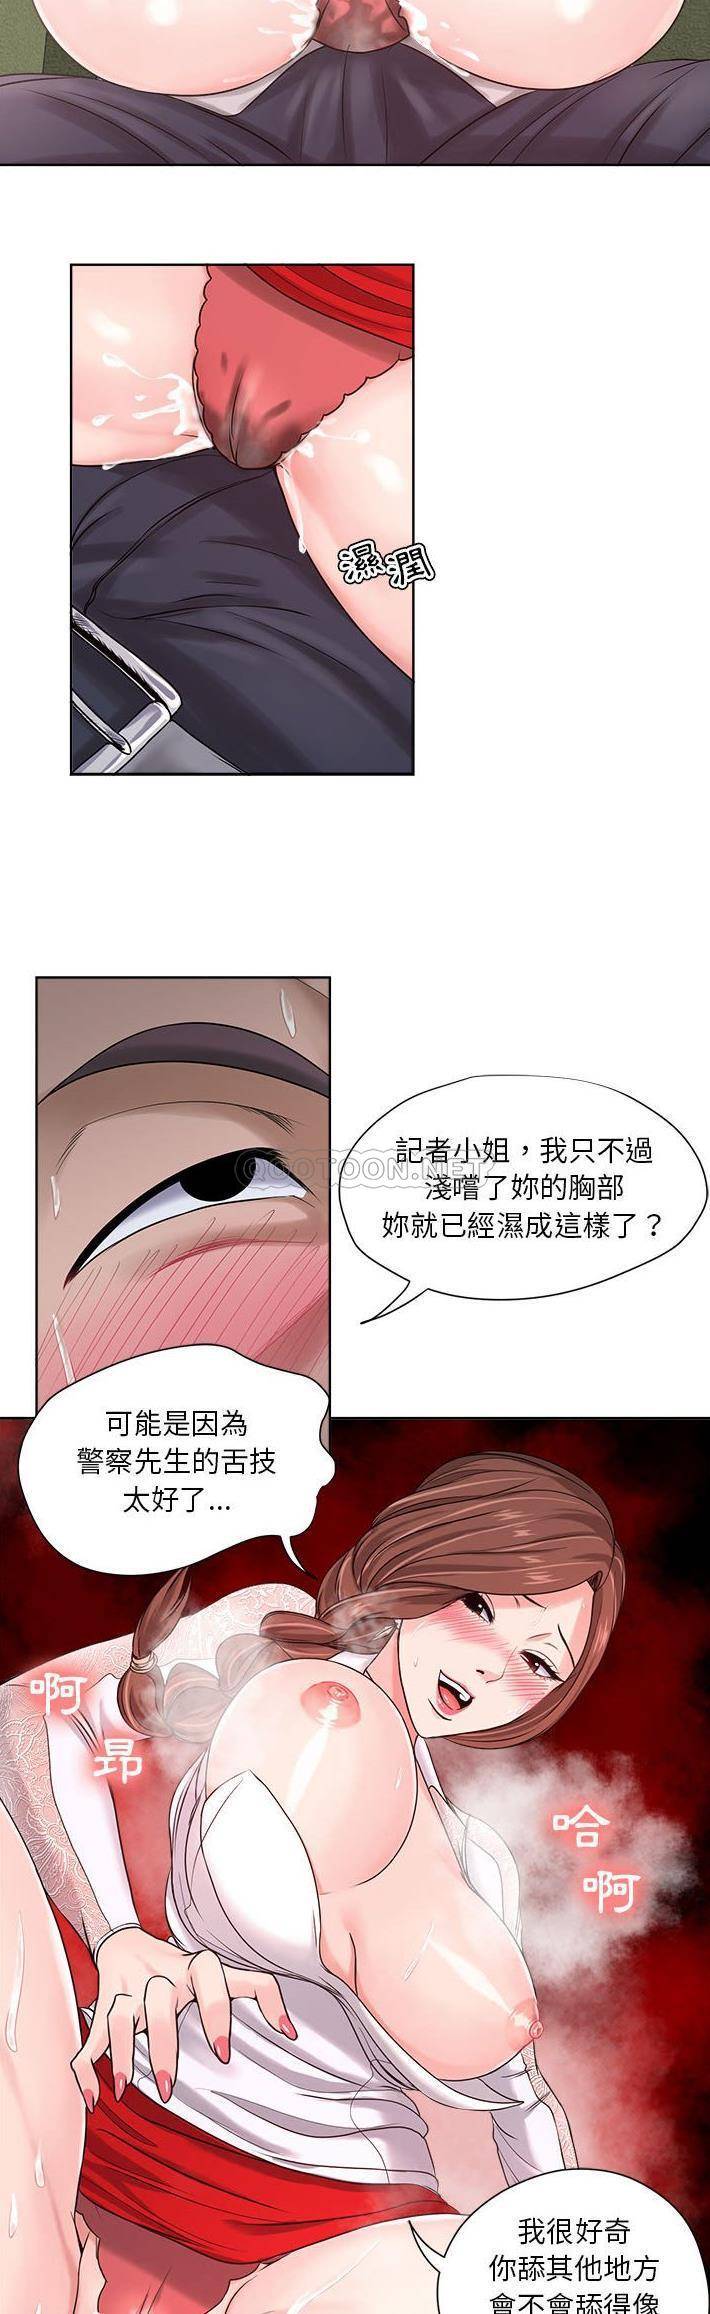 韩国污漫画 女人專門為難女人(女人的戰爭) 第12话 14